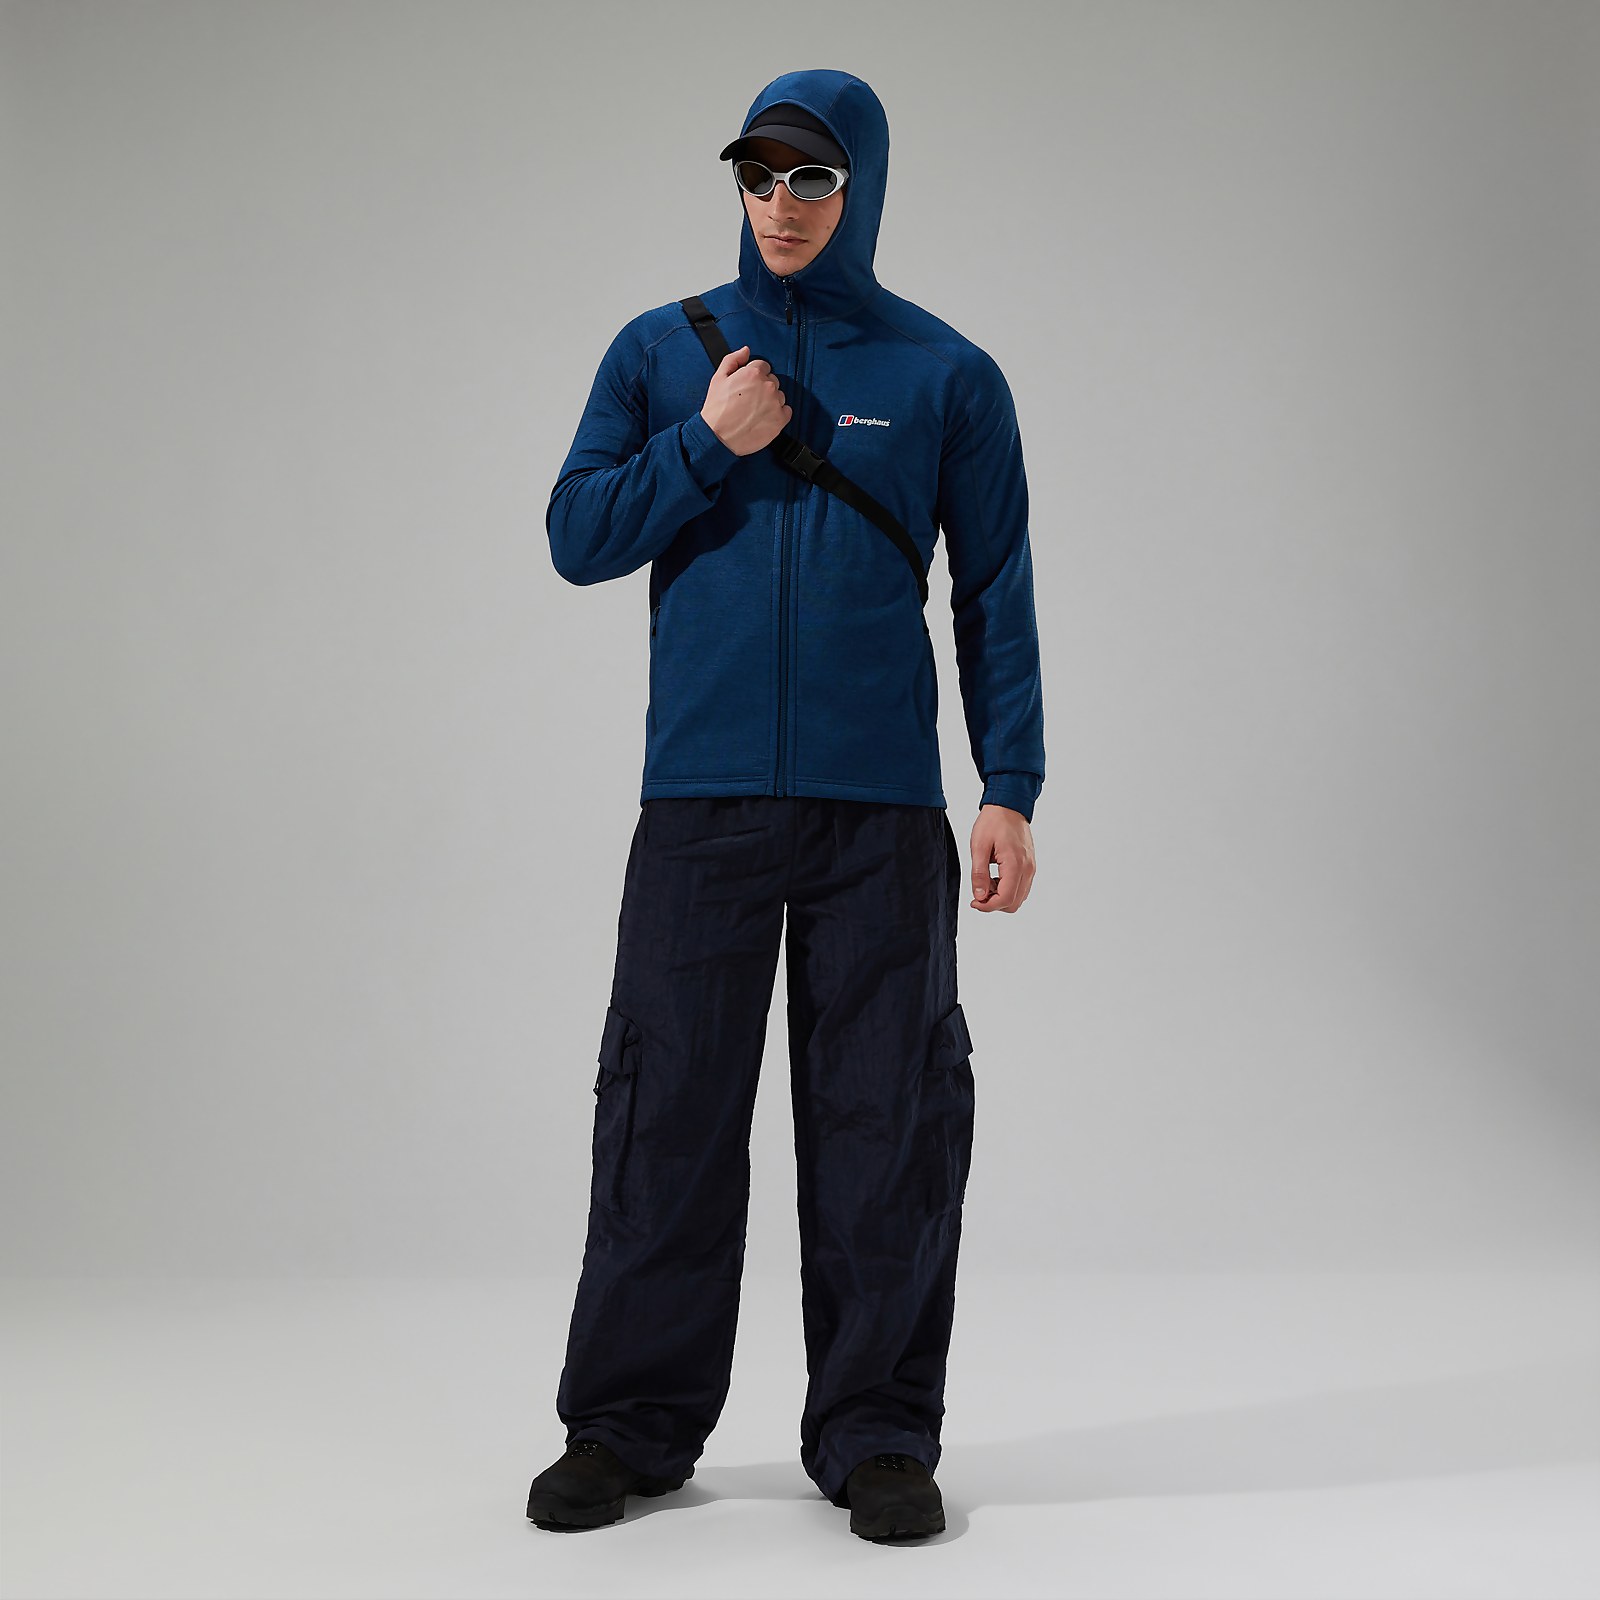 Men's URB Spitzer InterActive Hooded Fleece Jacket - Turquoise/Blue